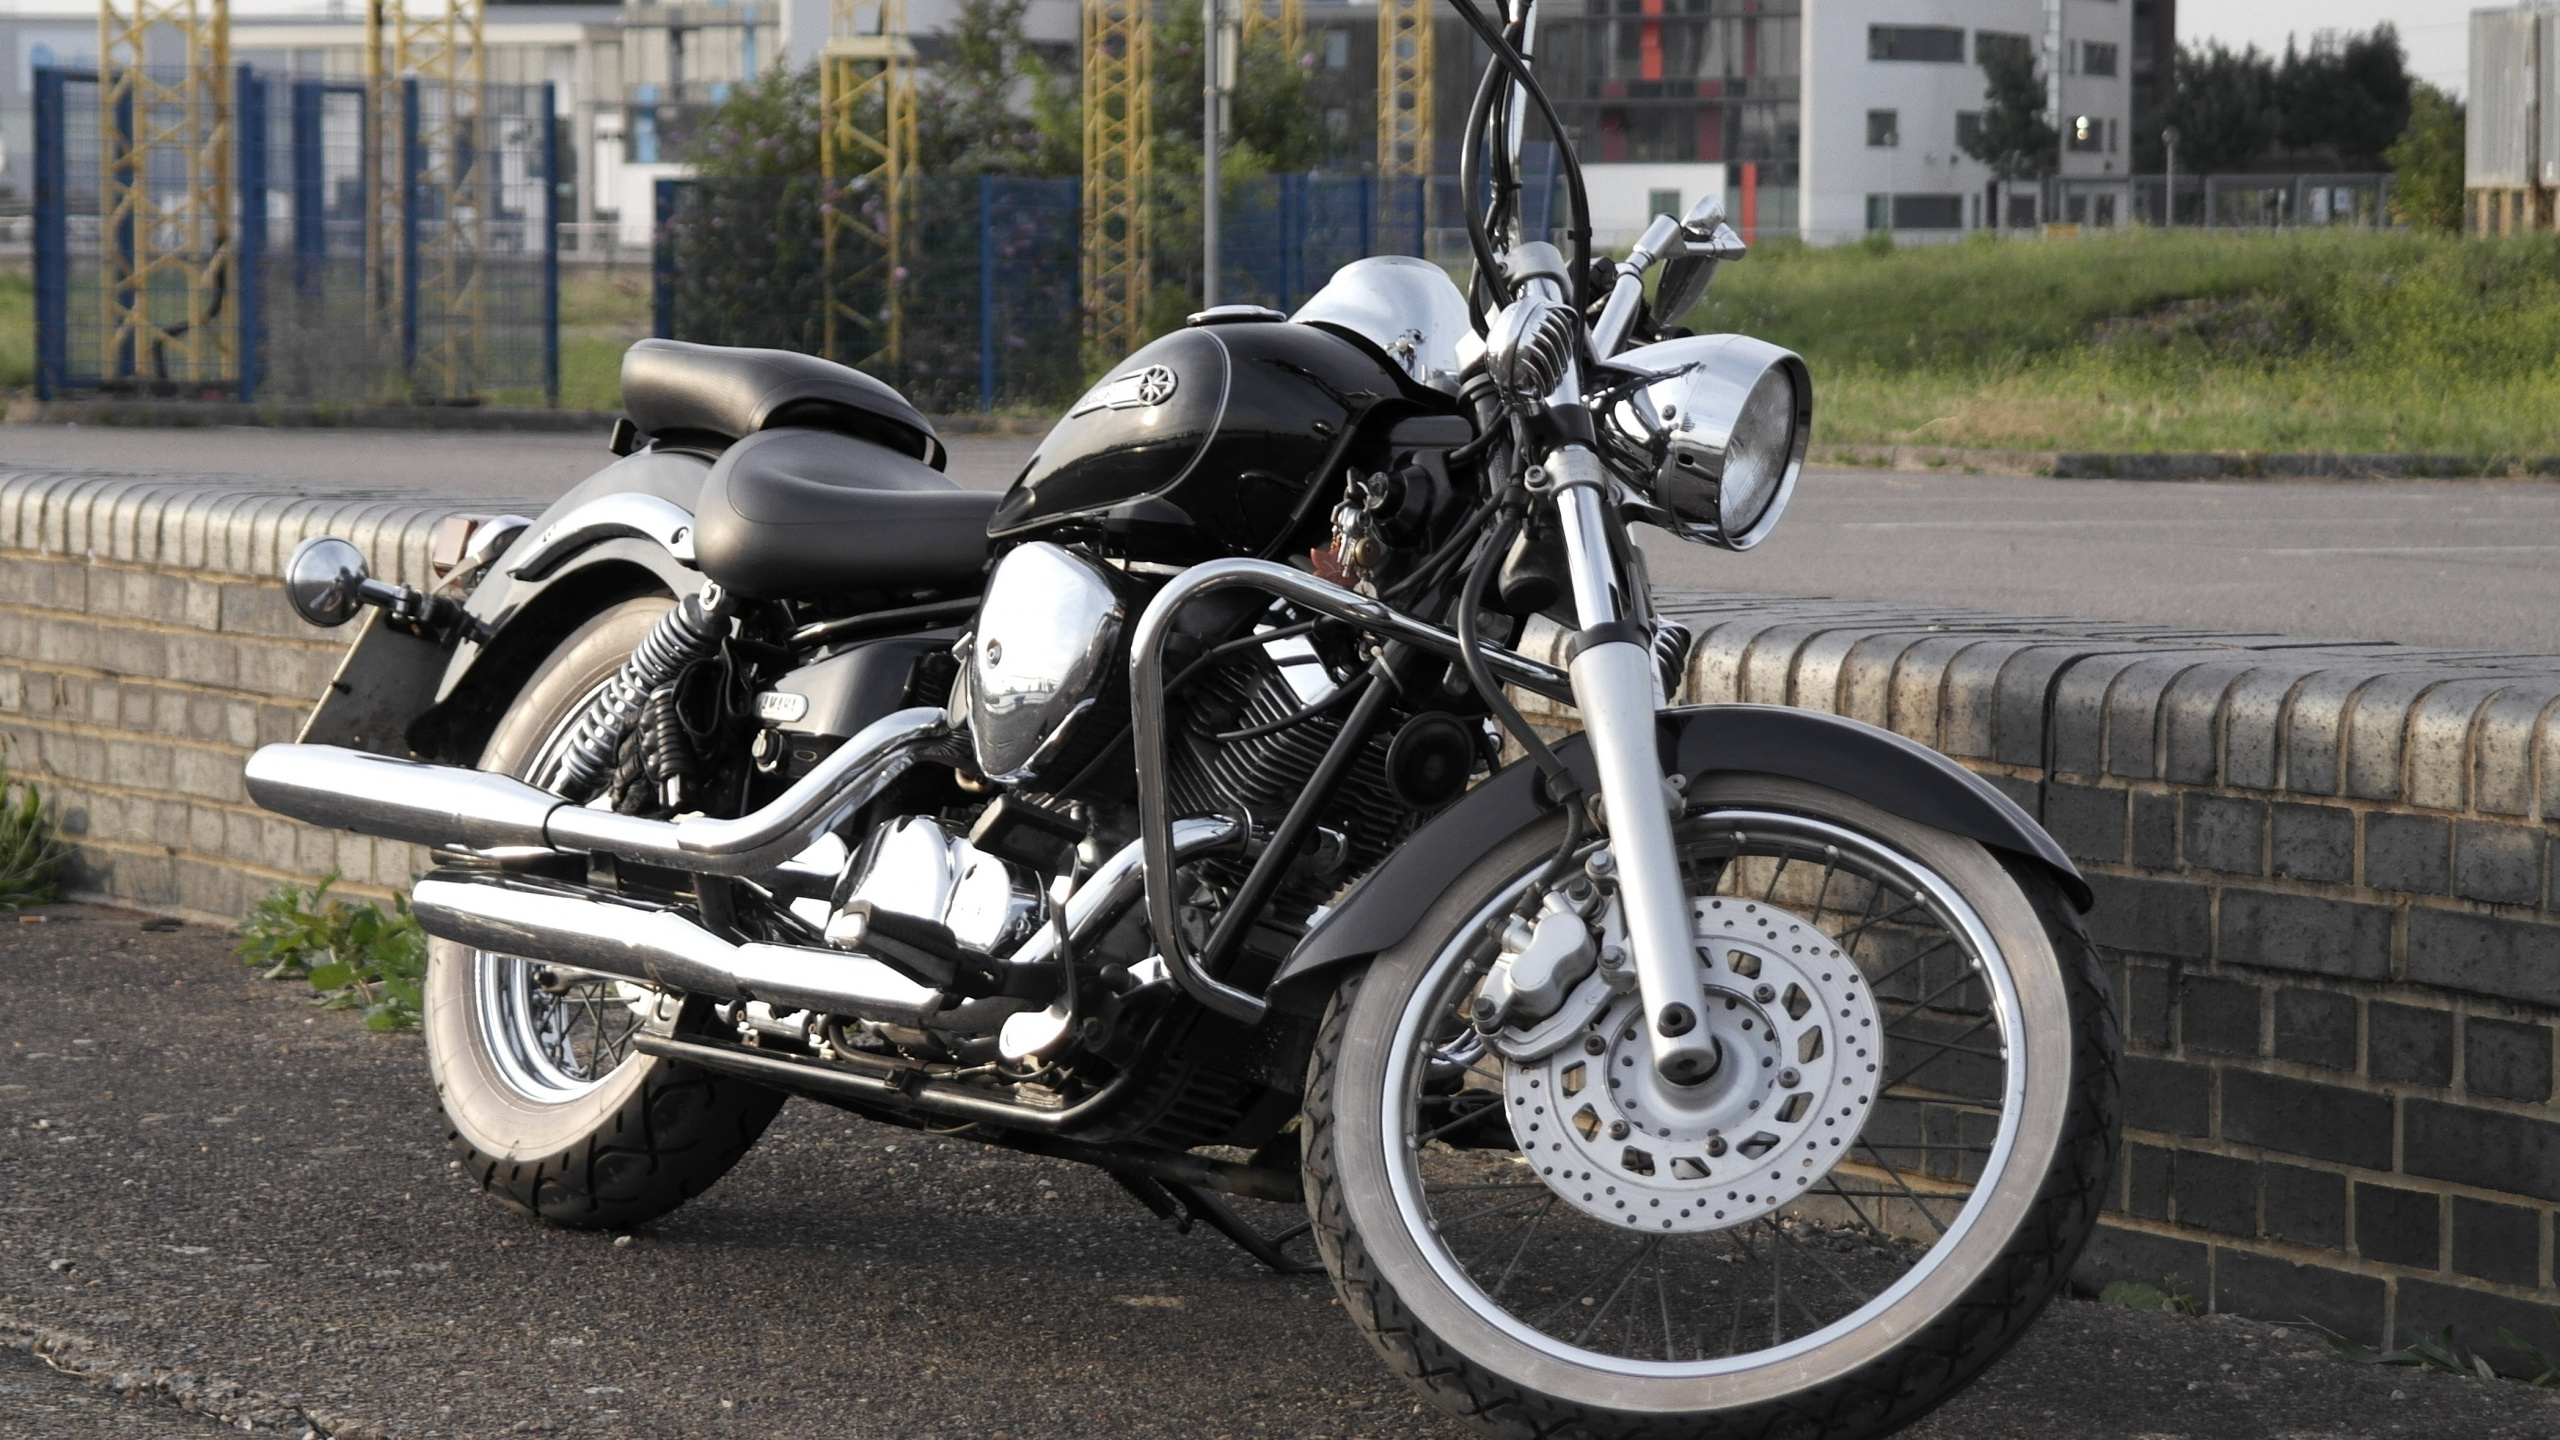 Motocicleta Cruiser Negra y Plateada en la Carretera Durante el Día. Wallpaper in 2560x1440 Resolution